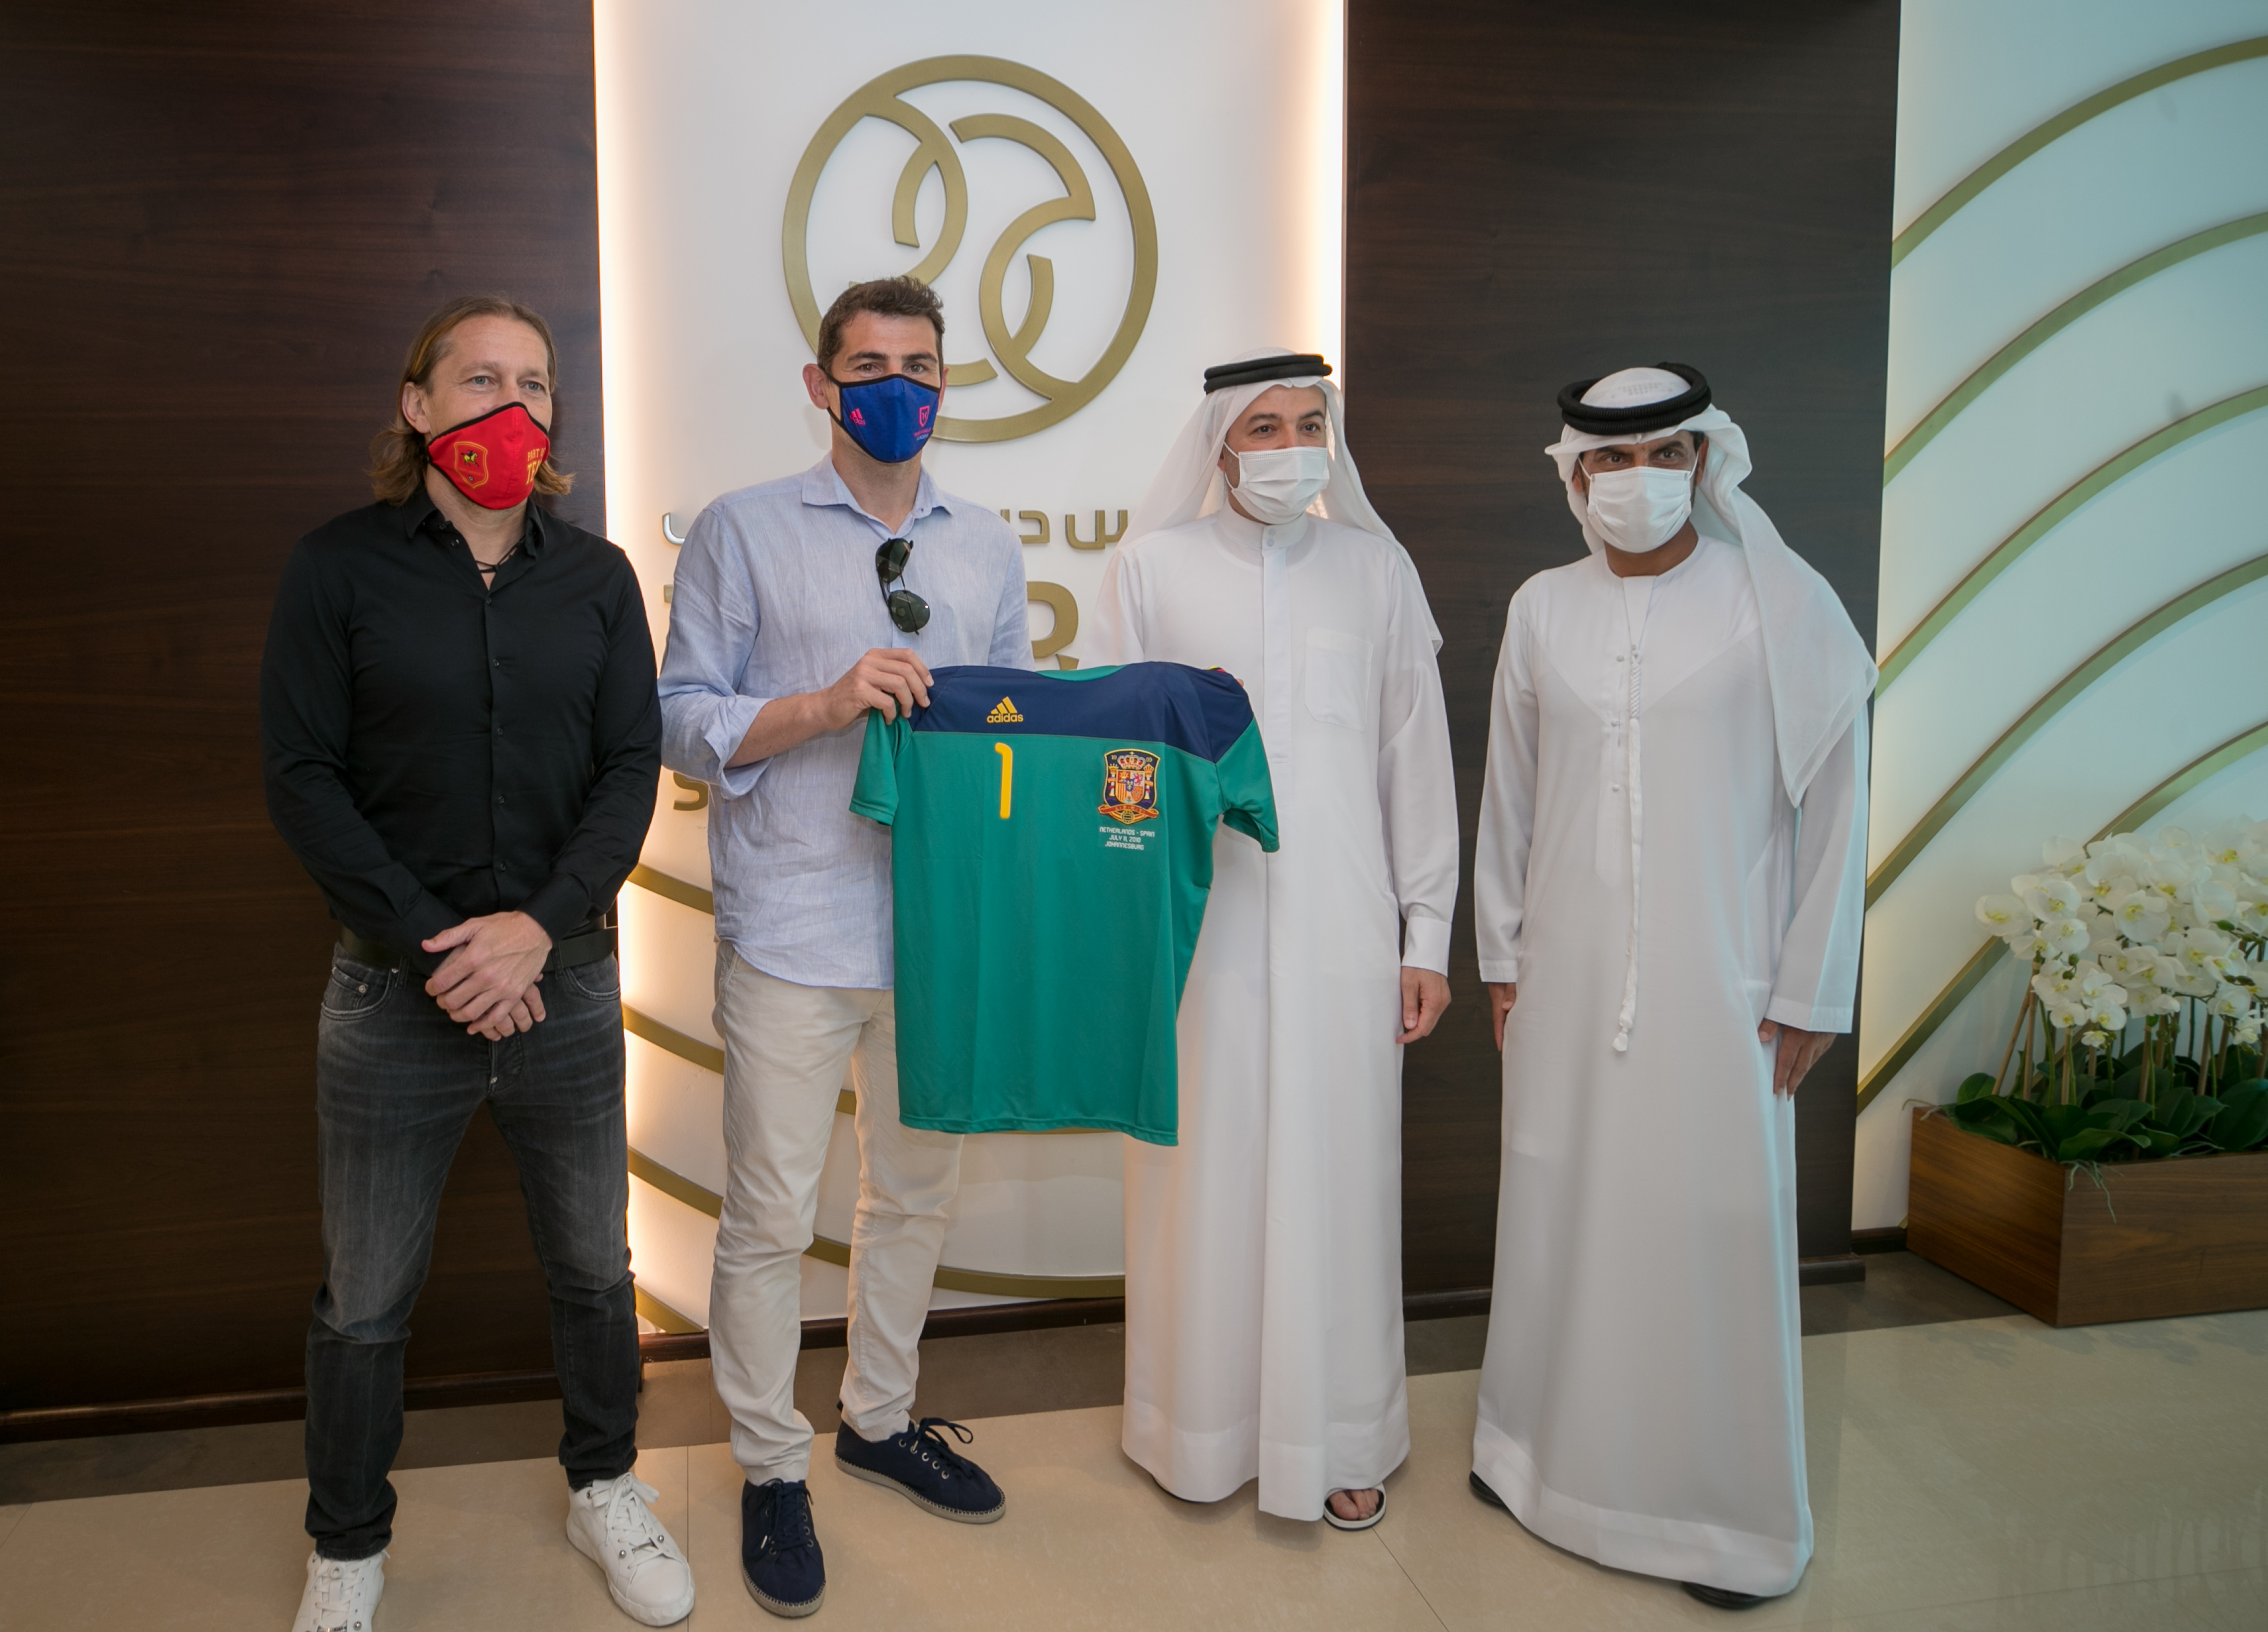 Casillas de España planea abrir una academia de entrenamiento de porteros en Dubai